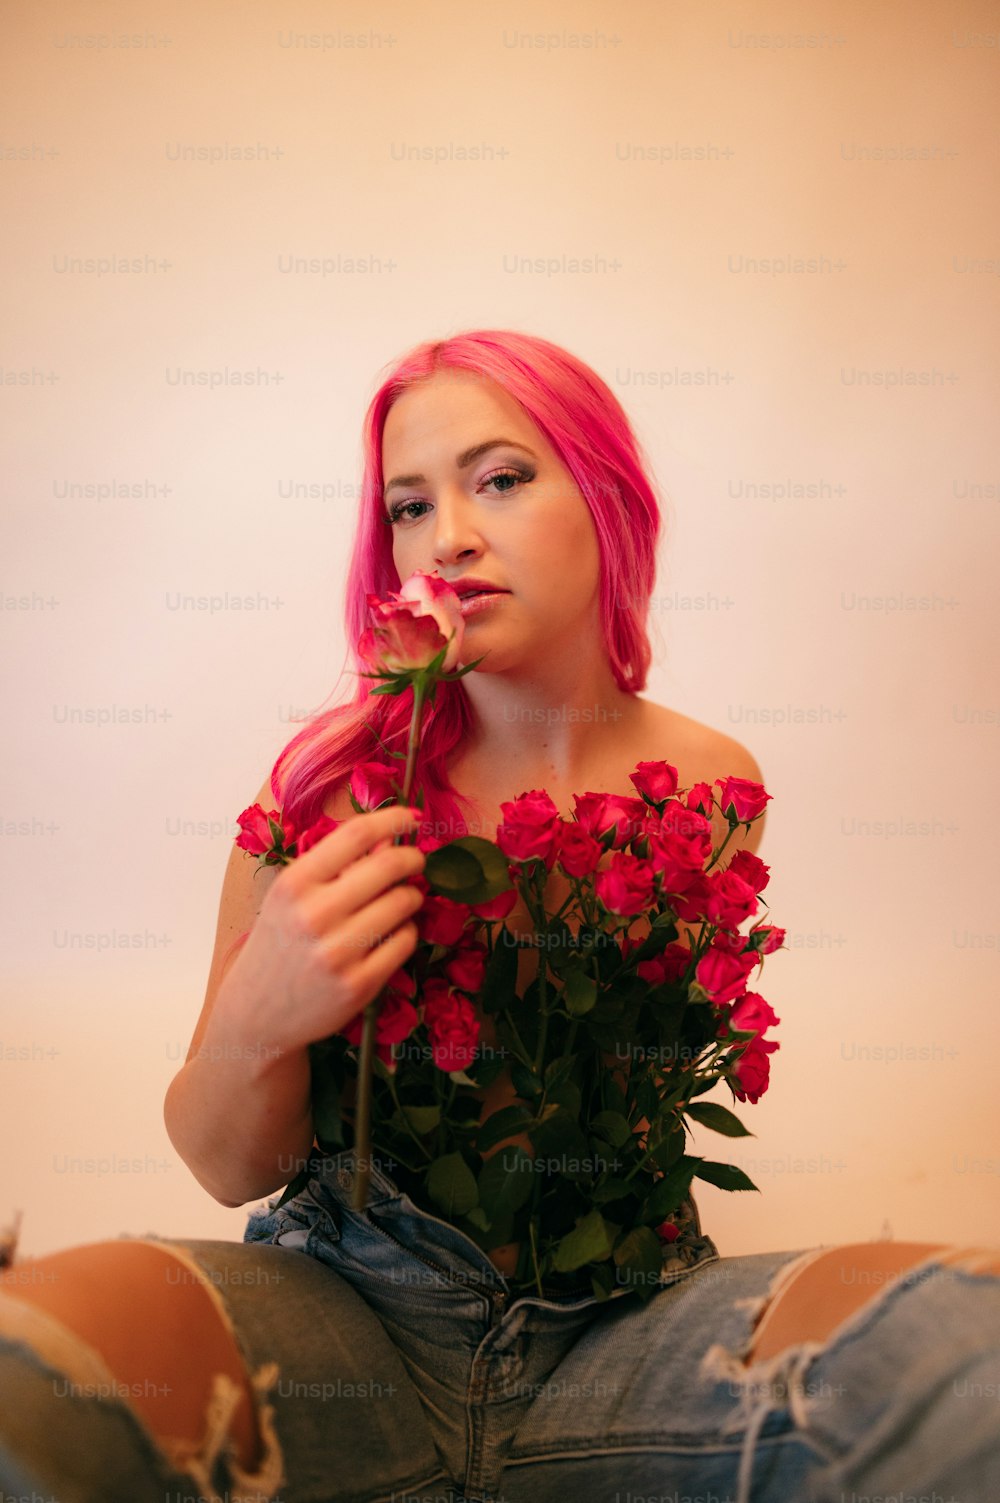 une personne aux cheveux roses tenant un bouquet de fleurs